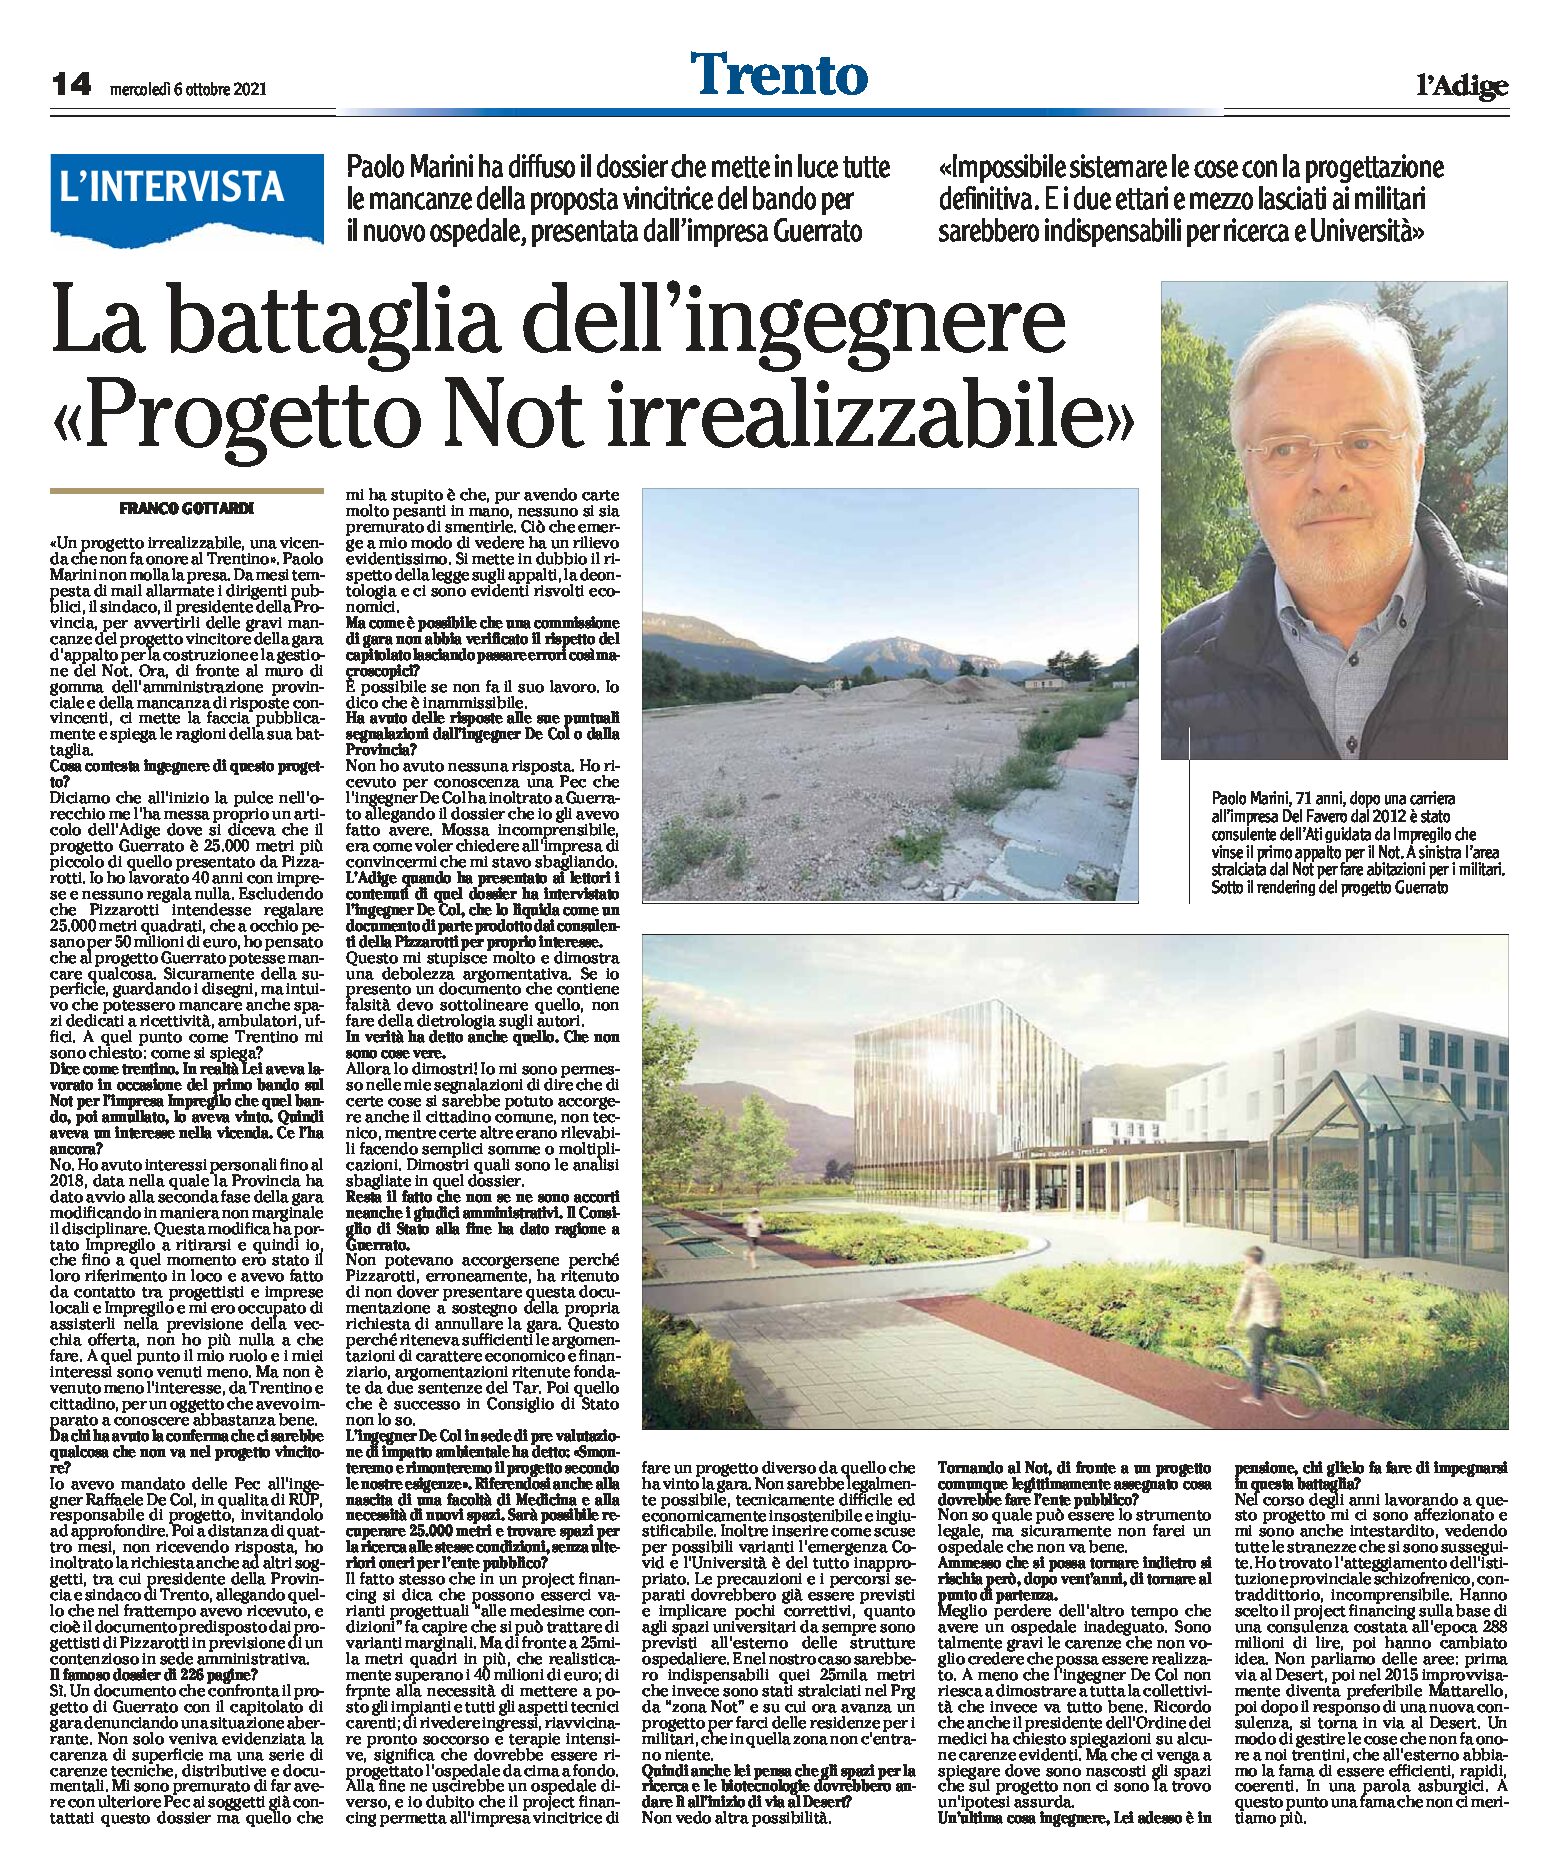 Trento: la battaglia dell’ingegnere “progetto Not irrealizzabile”. Intervista a Marini